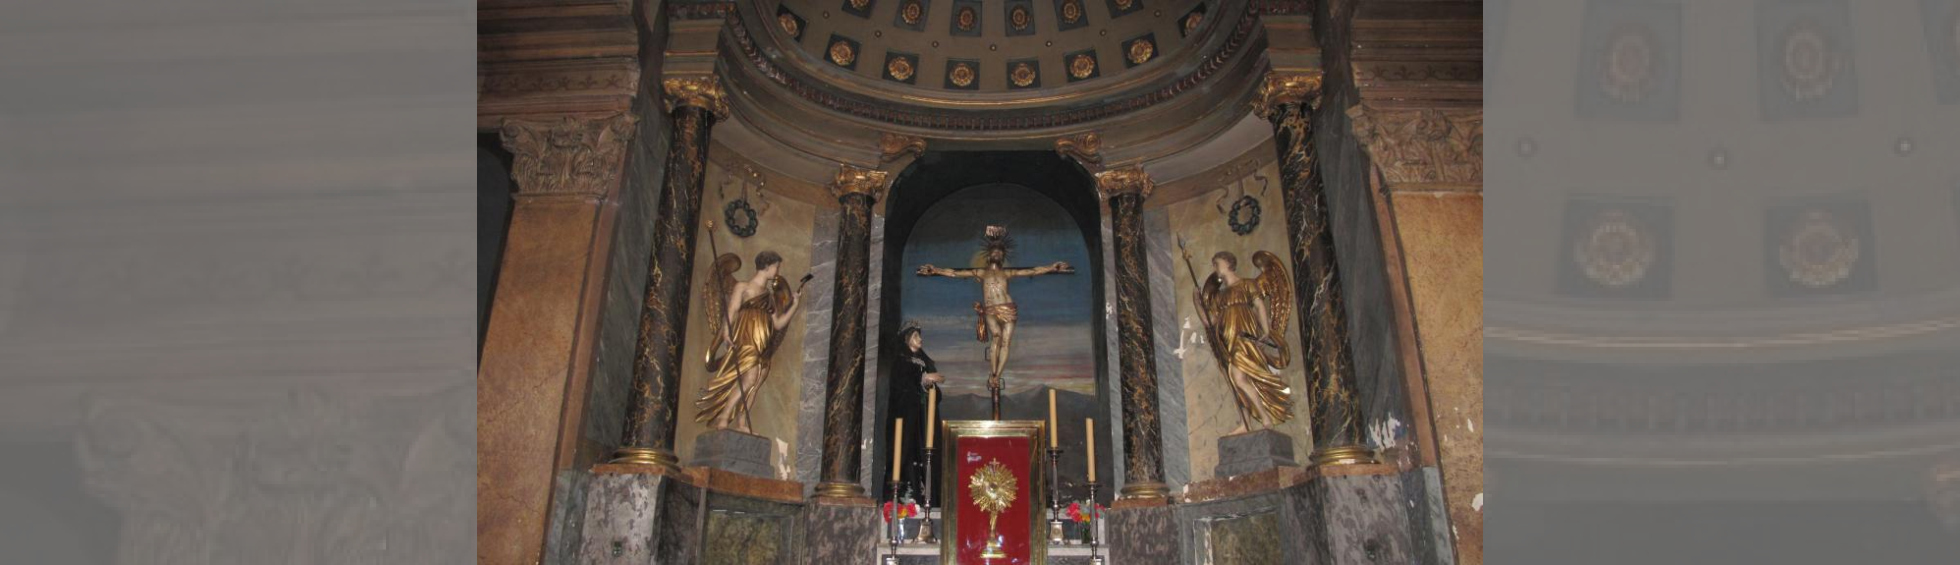 La chapelle des Saintes épines:reliquaires contenant des épines de la couronne du Christe lors de sa cruxifiction